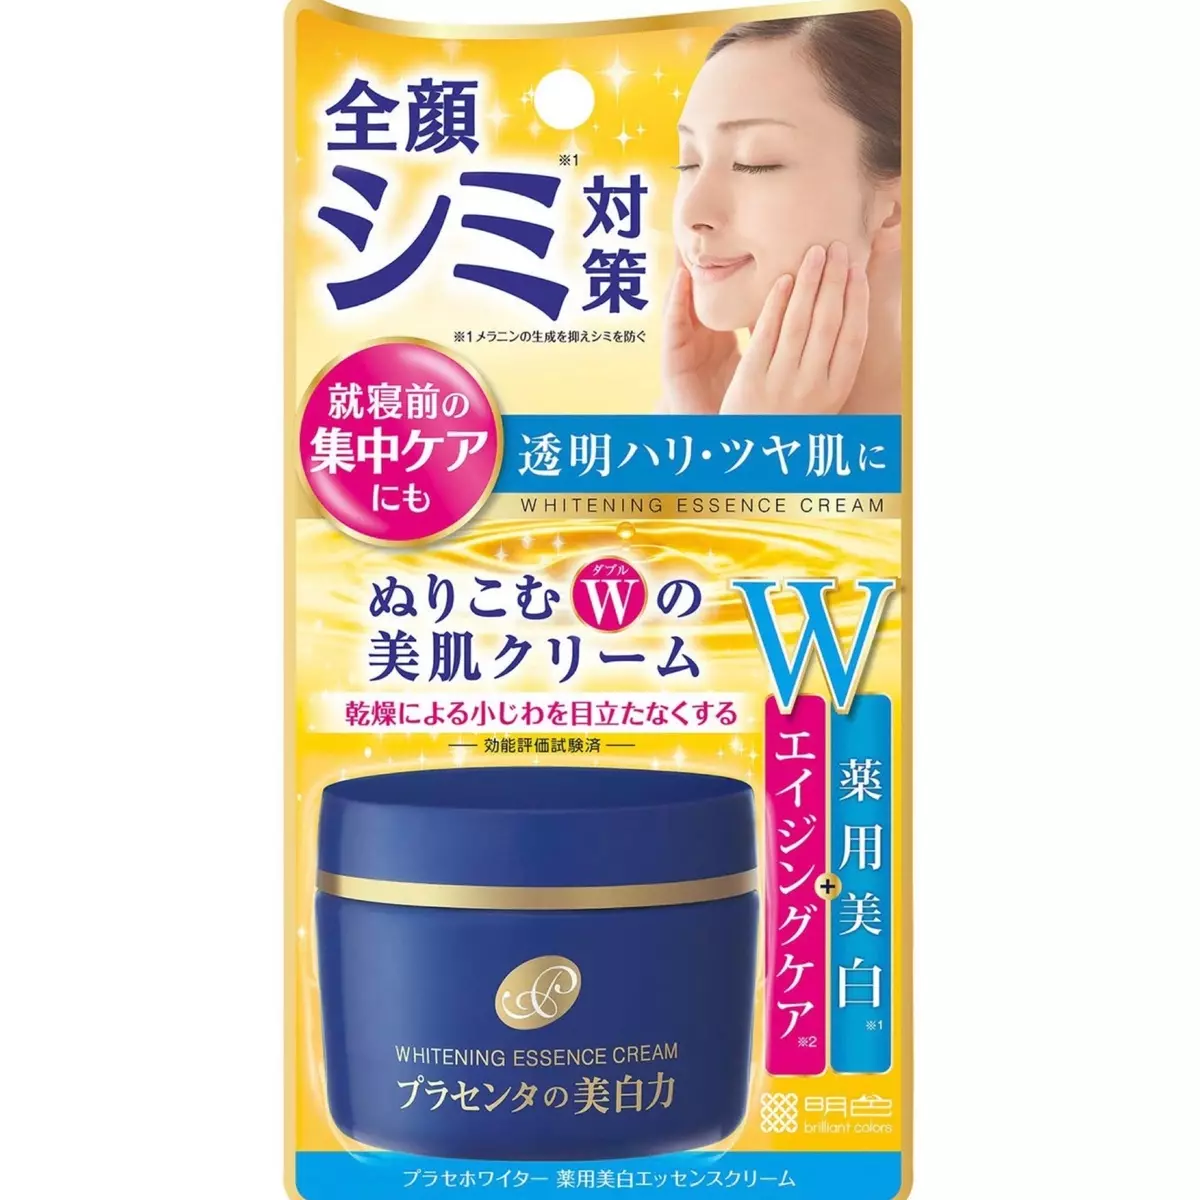 Kosmetik Japonè: Pi bon pwodui kosmetik mak soti nan Japon. Rosette, Kose ak lòt pwodui kosmetik pwofesyonèl. Reviews of Cosmetologists 4498_14